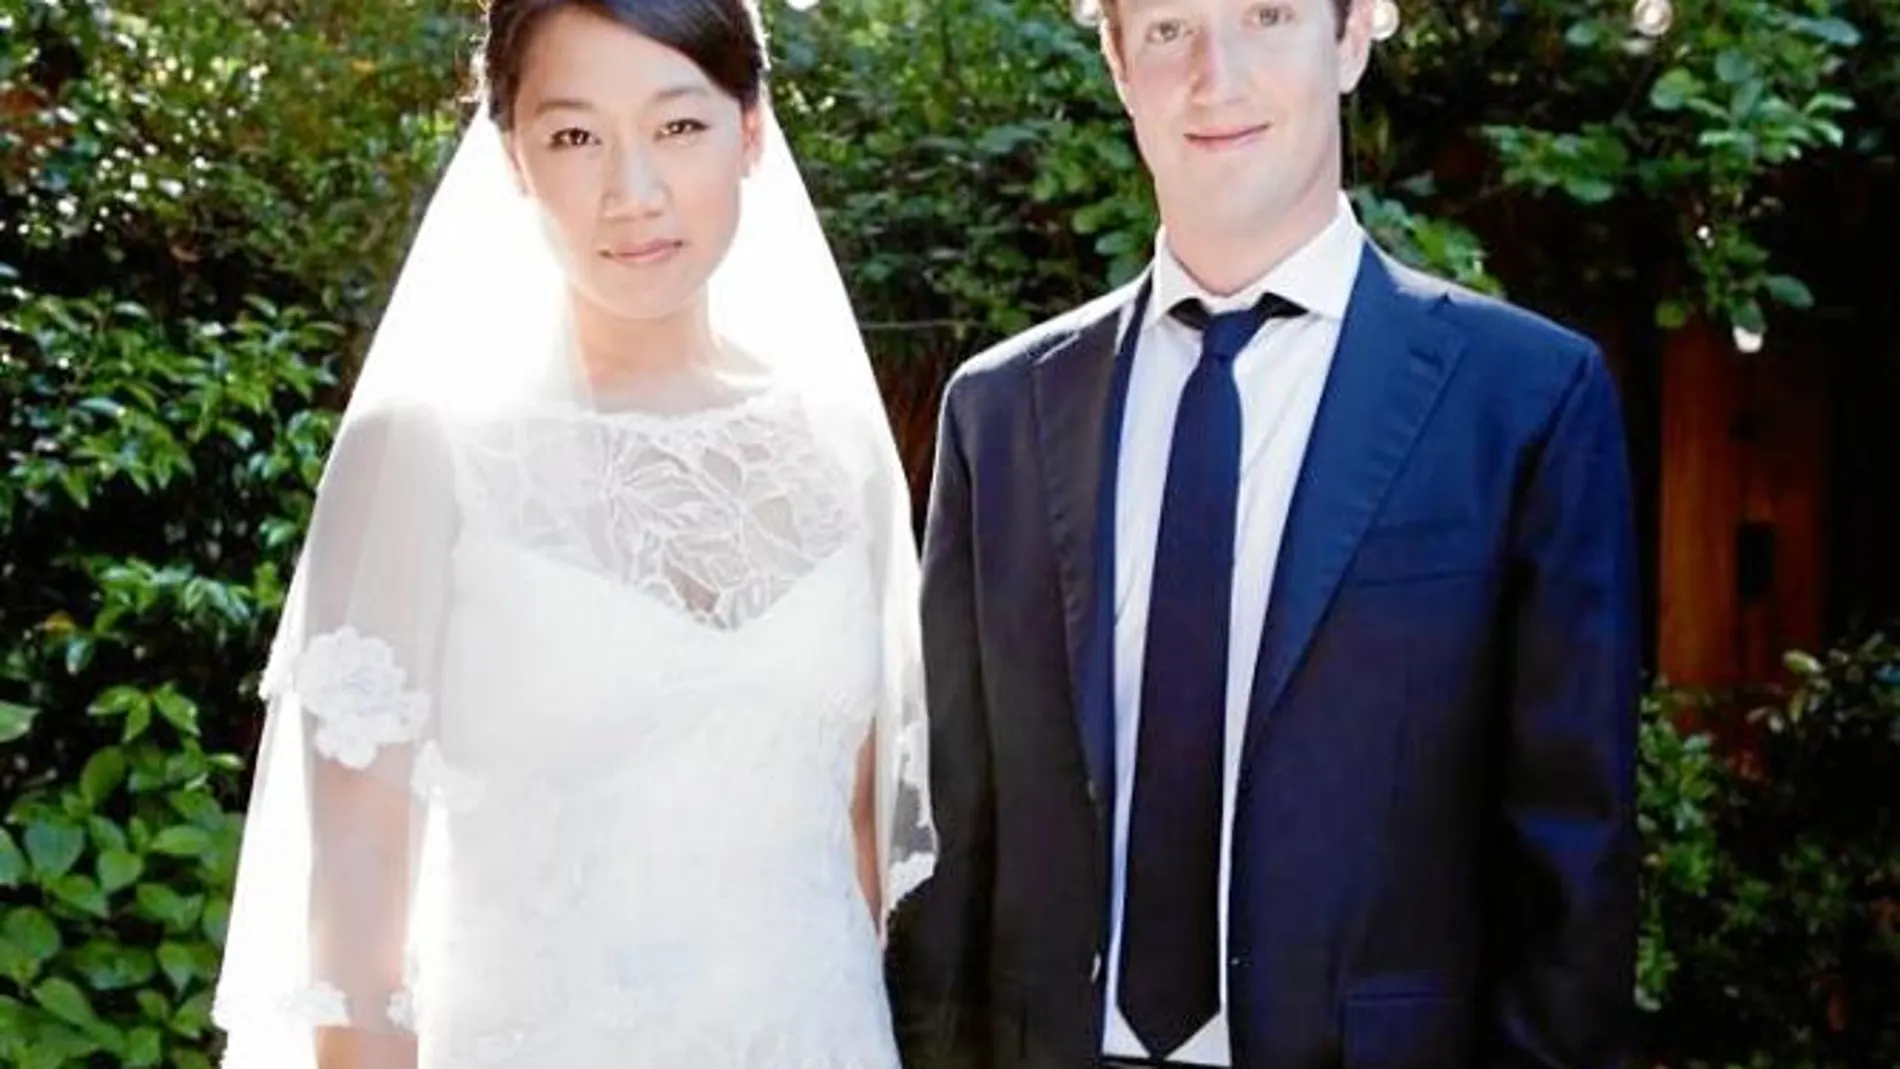 Zuckerberg perfil de casado